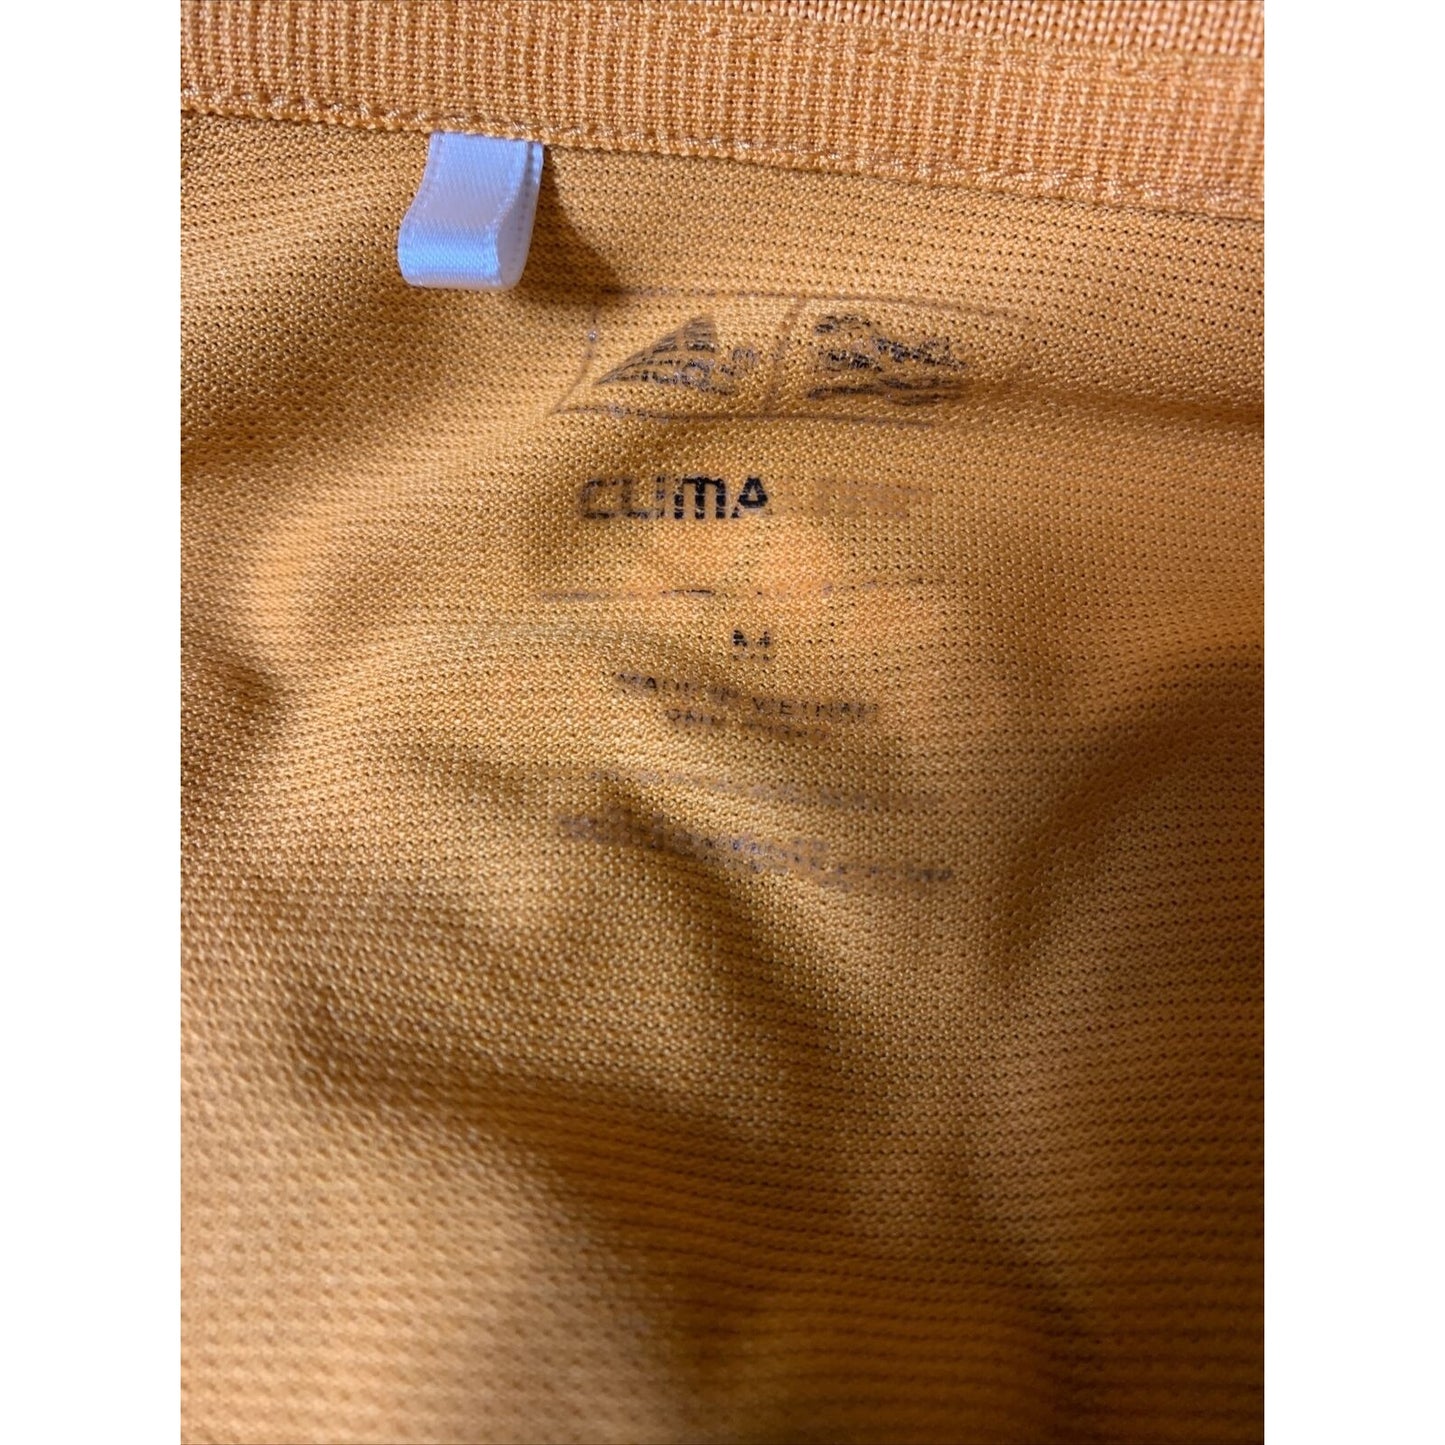 Adidas Climalite Men's Orange Short Sleeve Polo Shirt!! Size Medium